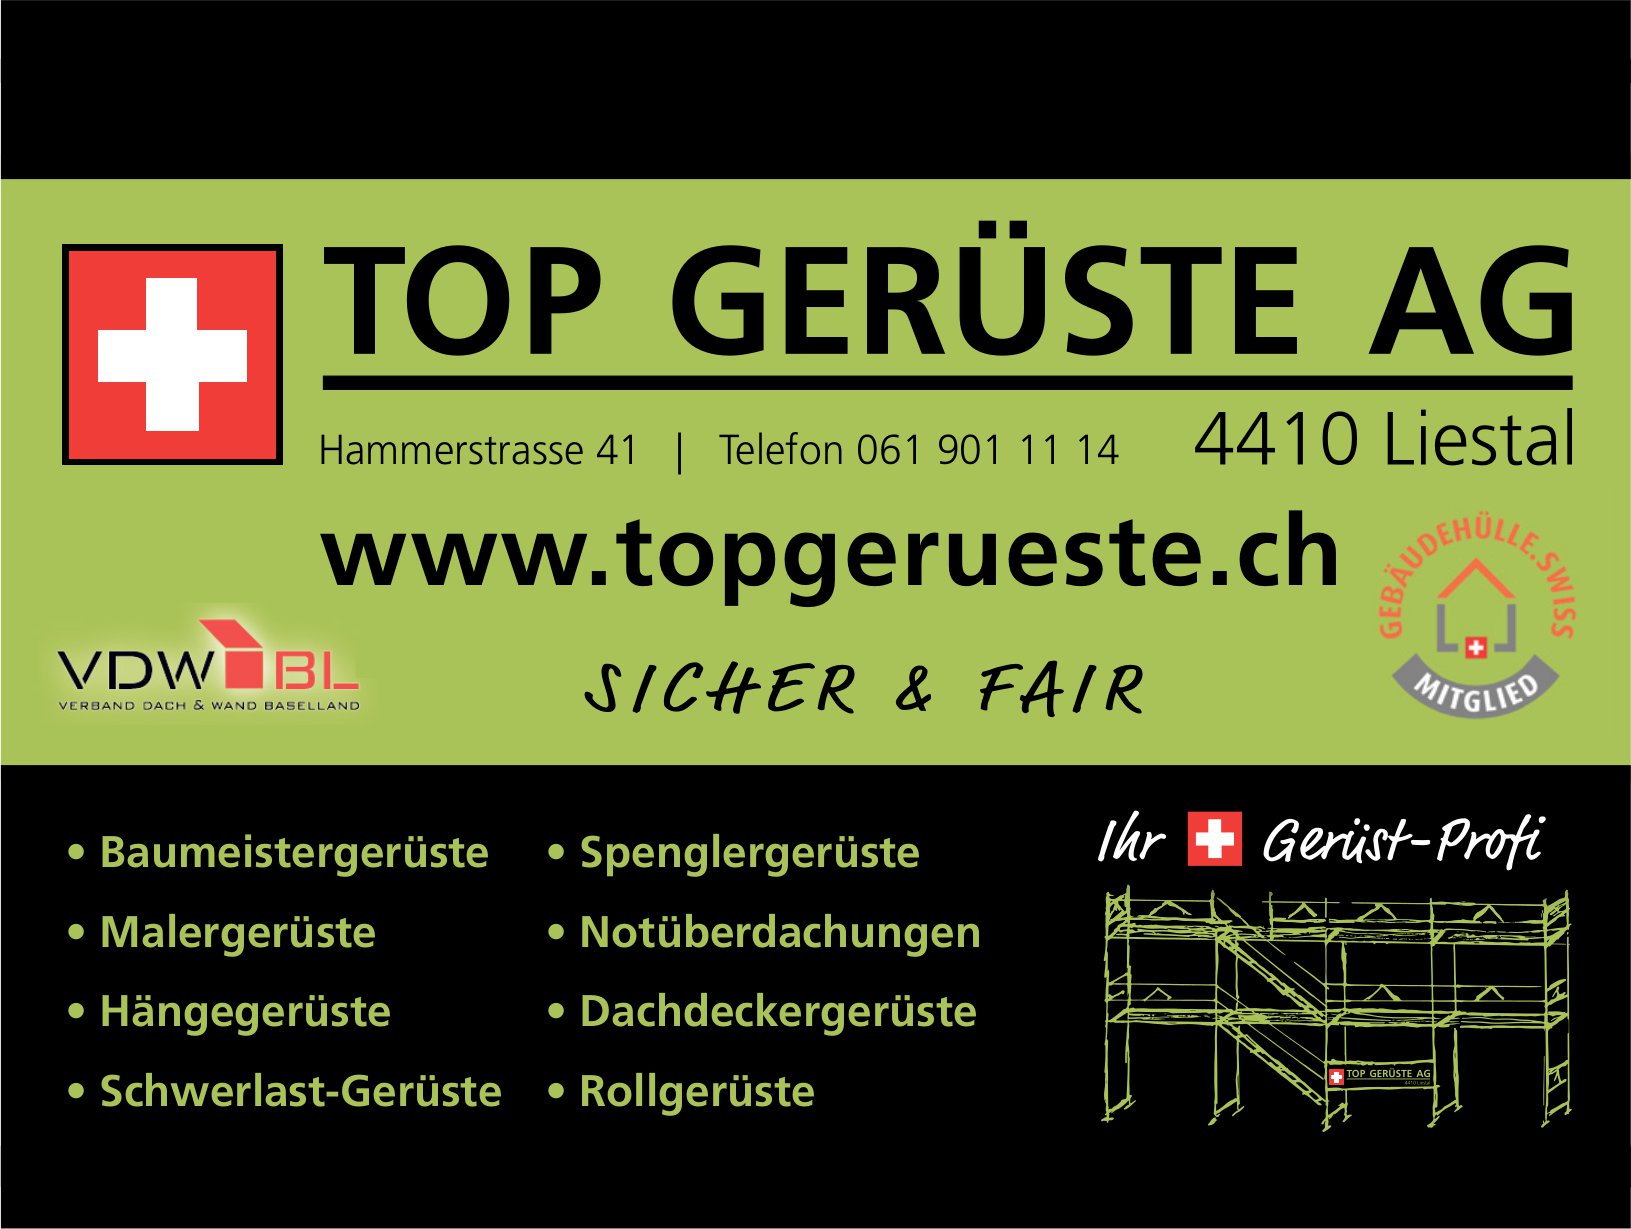 Top Gerüste AG, Liestal - sicher & fair